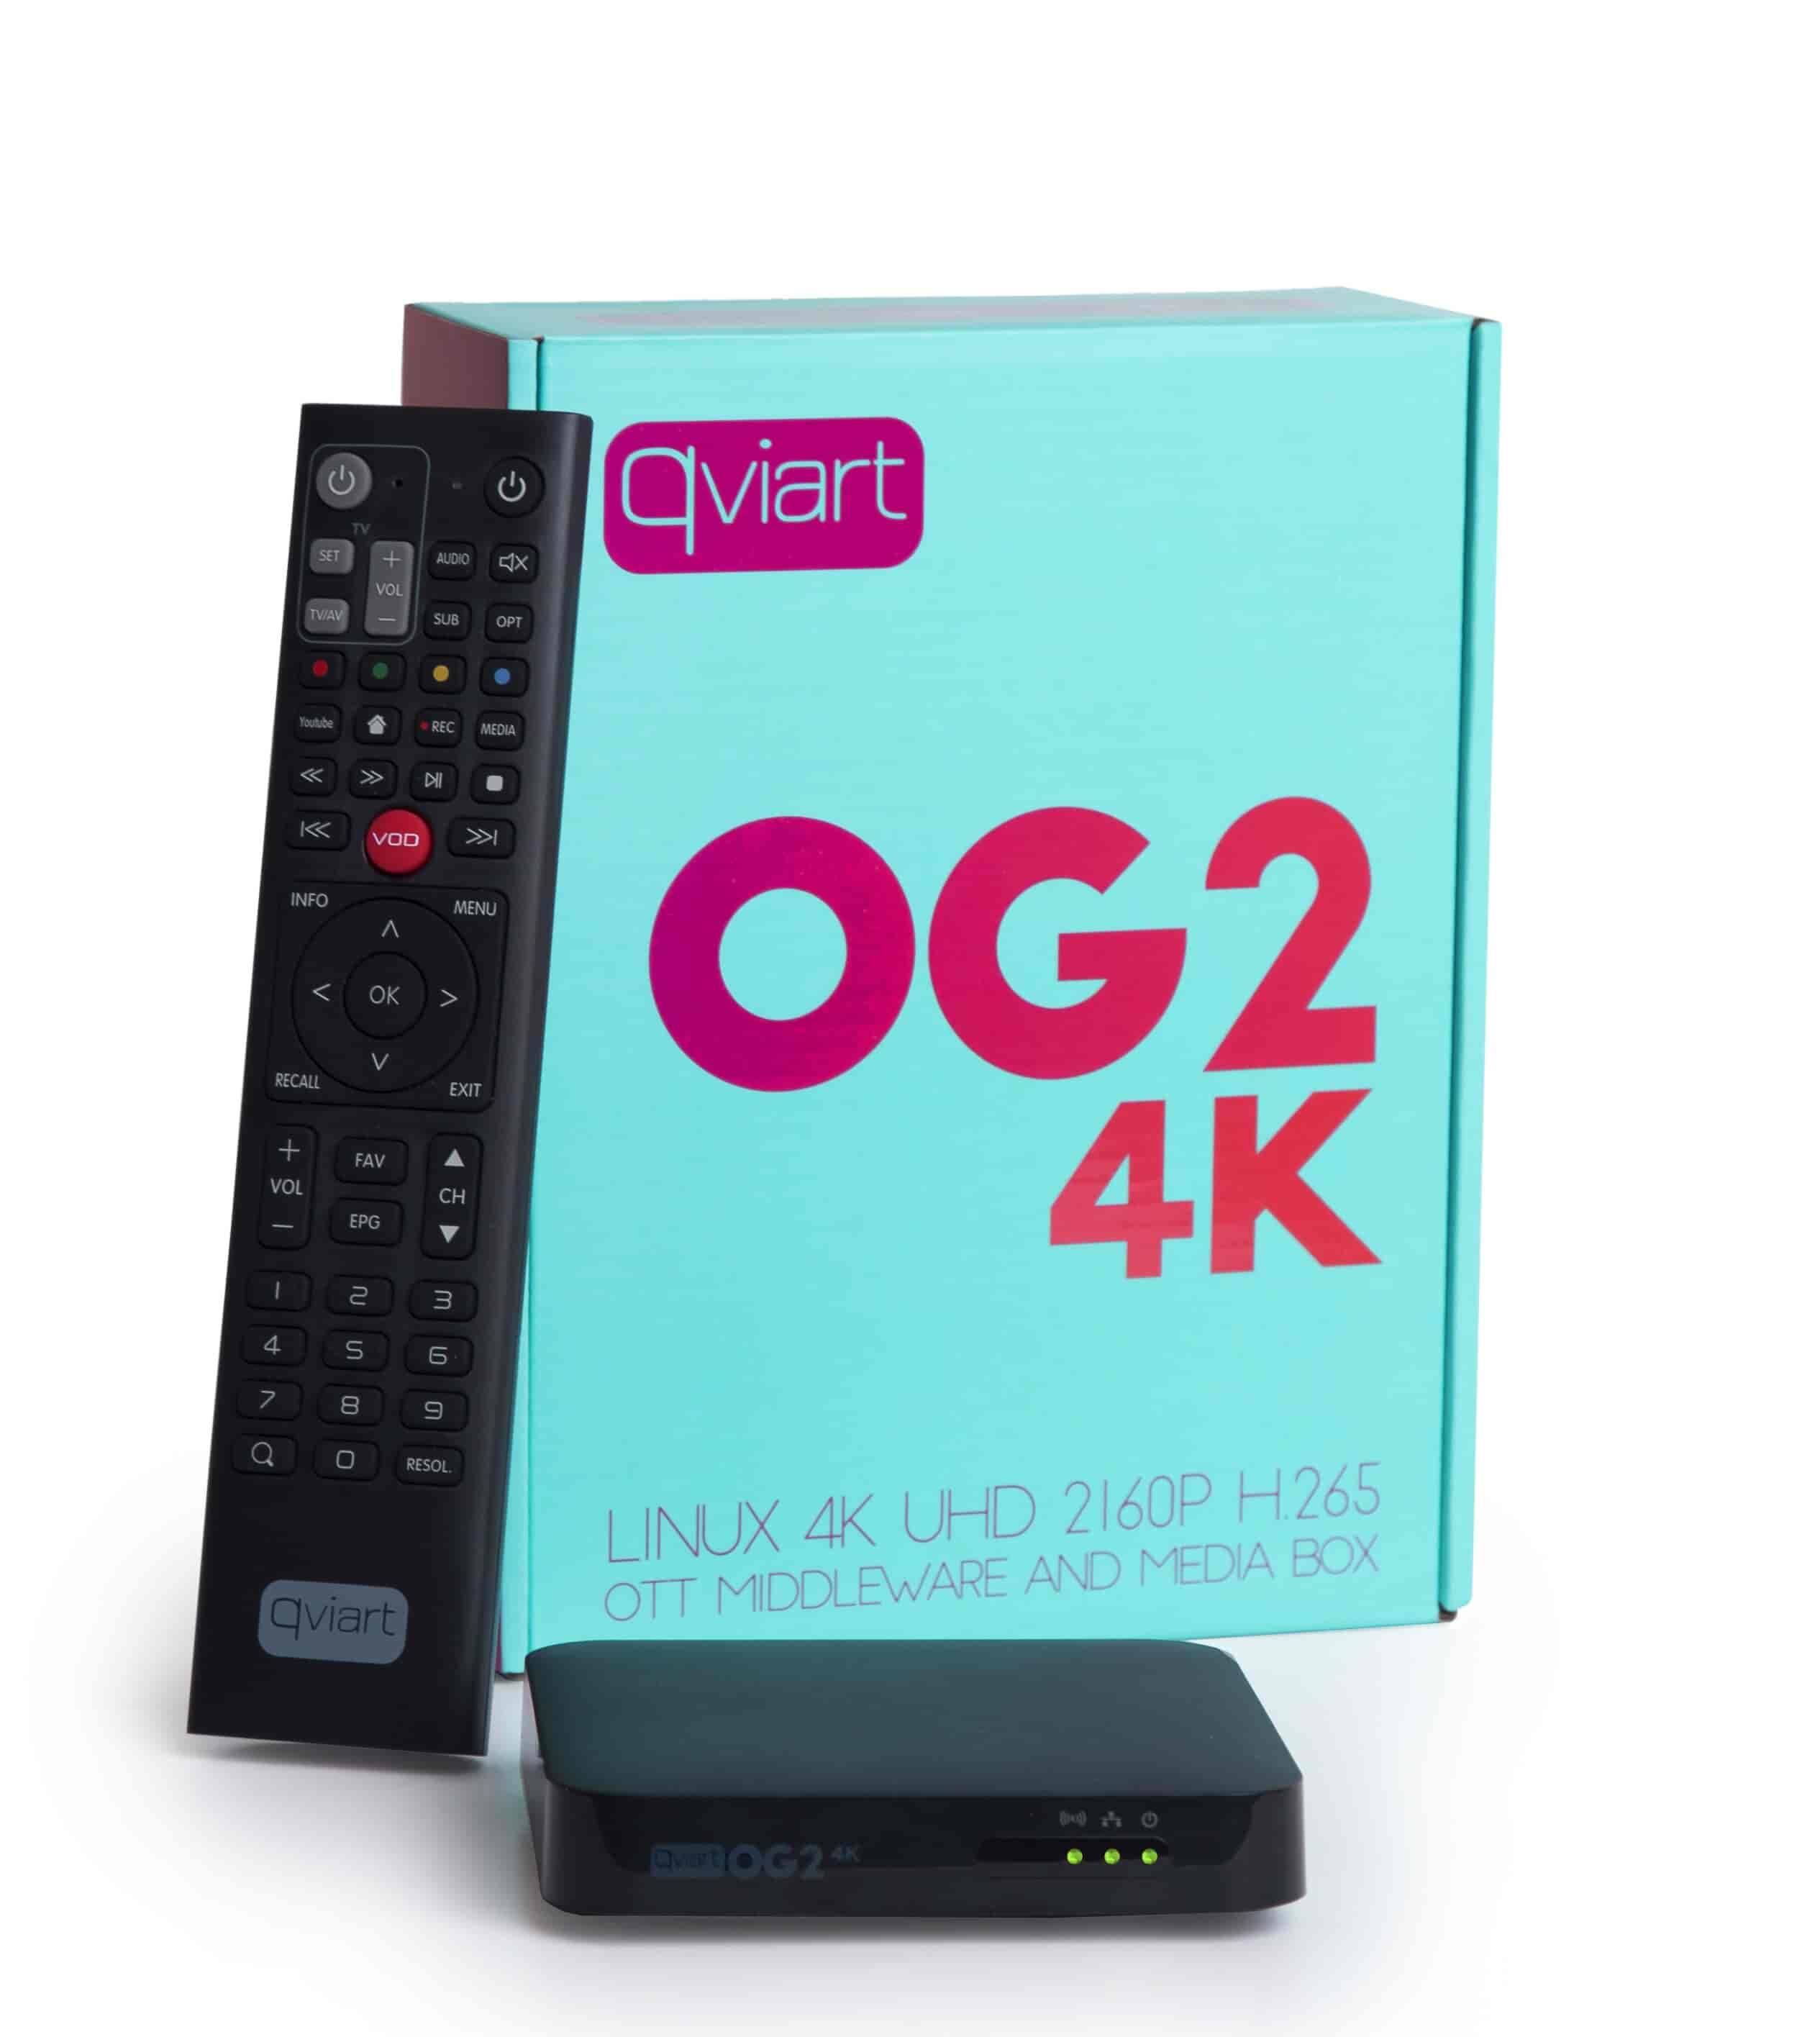 IPTV VOD Player Qviart OG24K - OG24K IPTV Boks multimediaplayer Qviart 4K UHD 2160P H.265